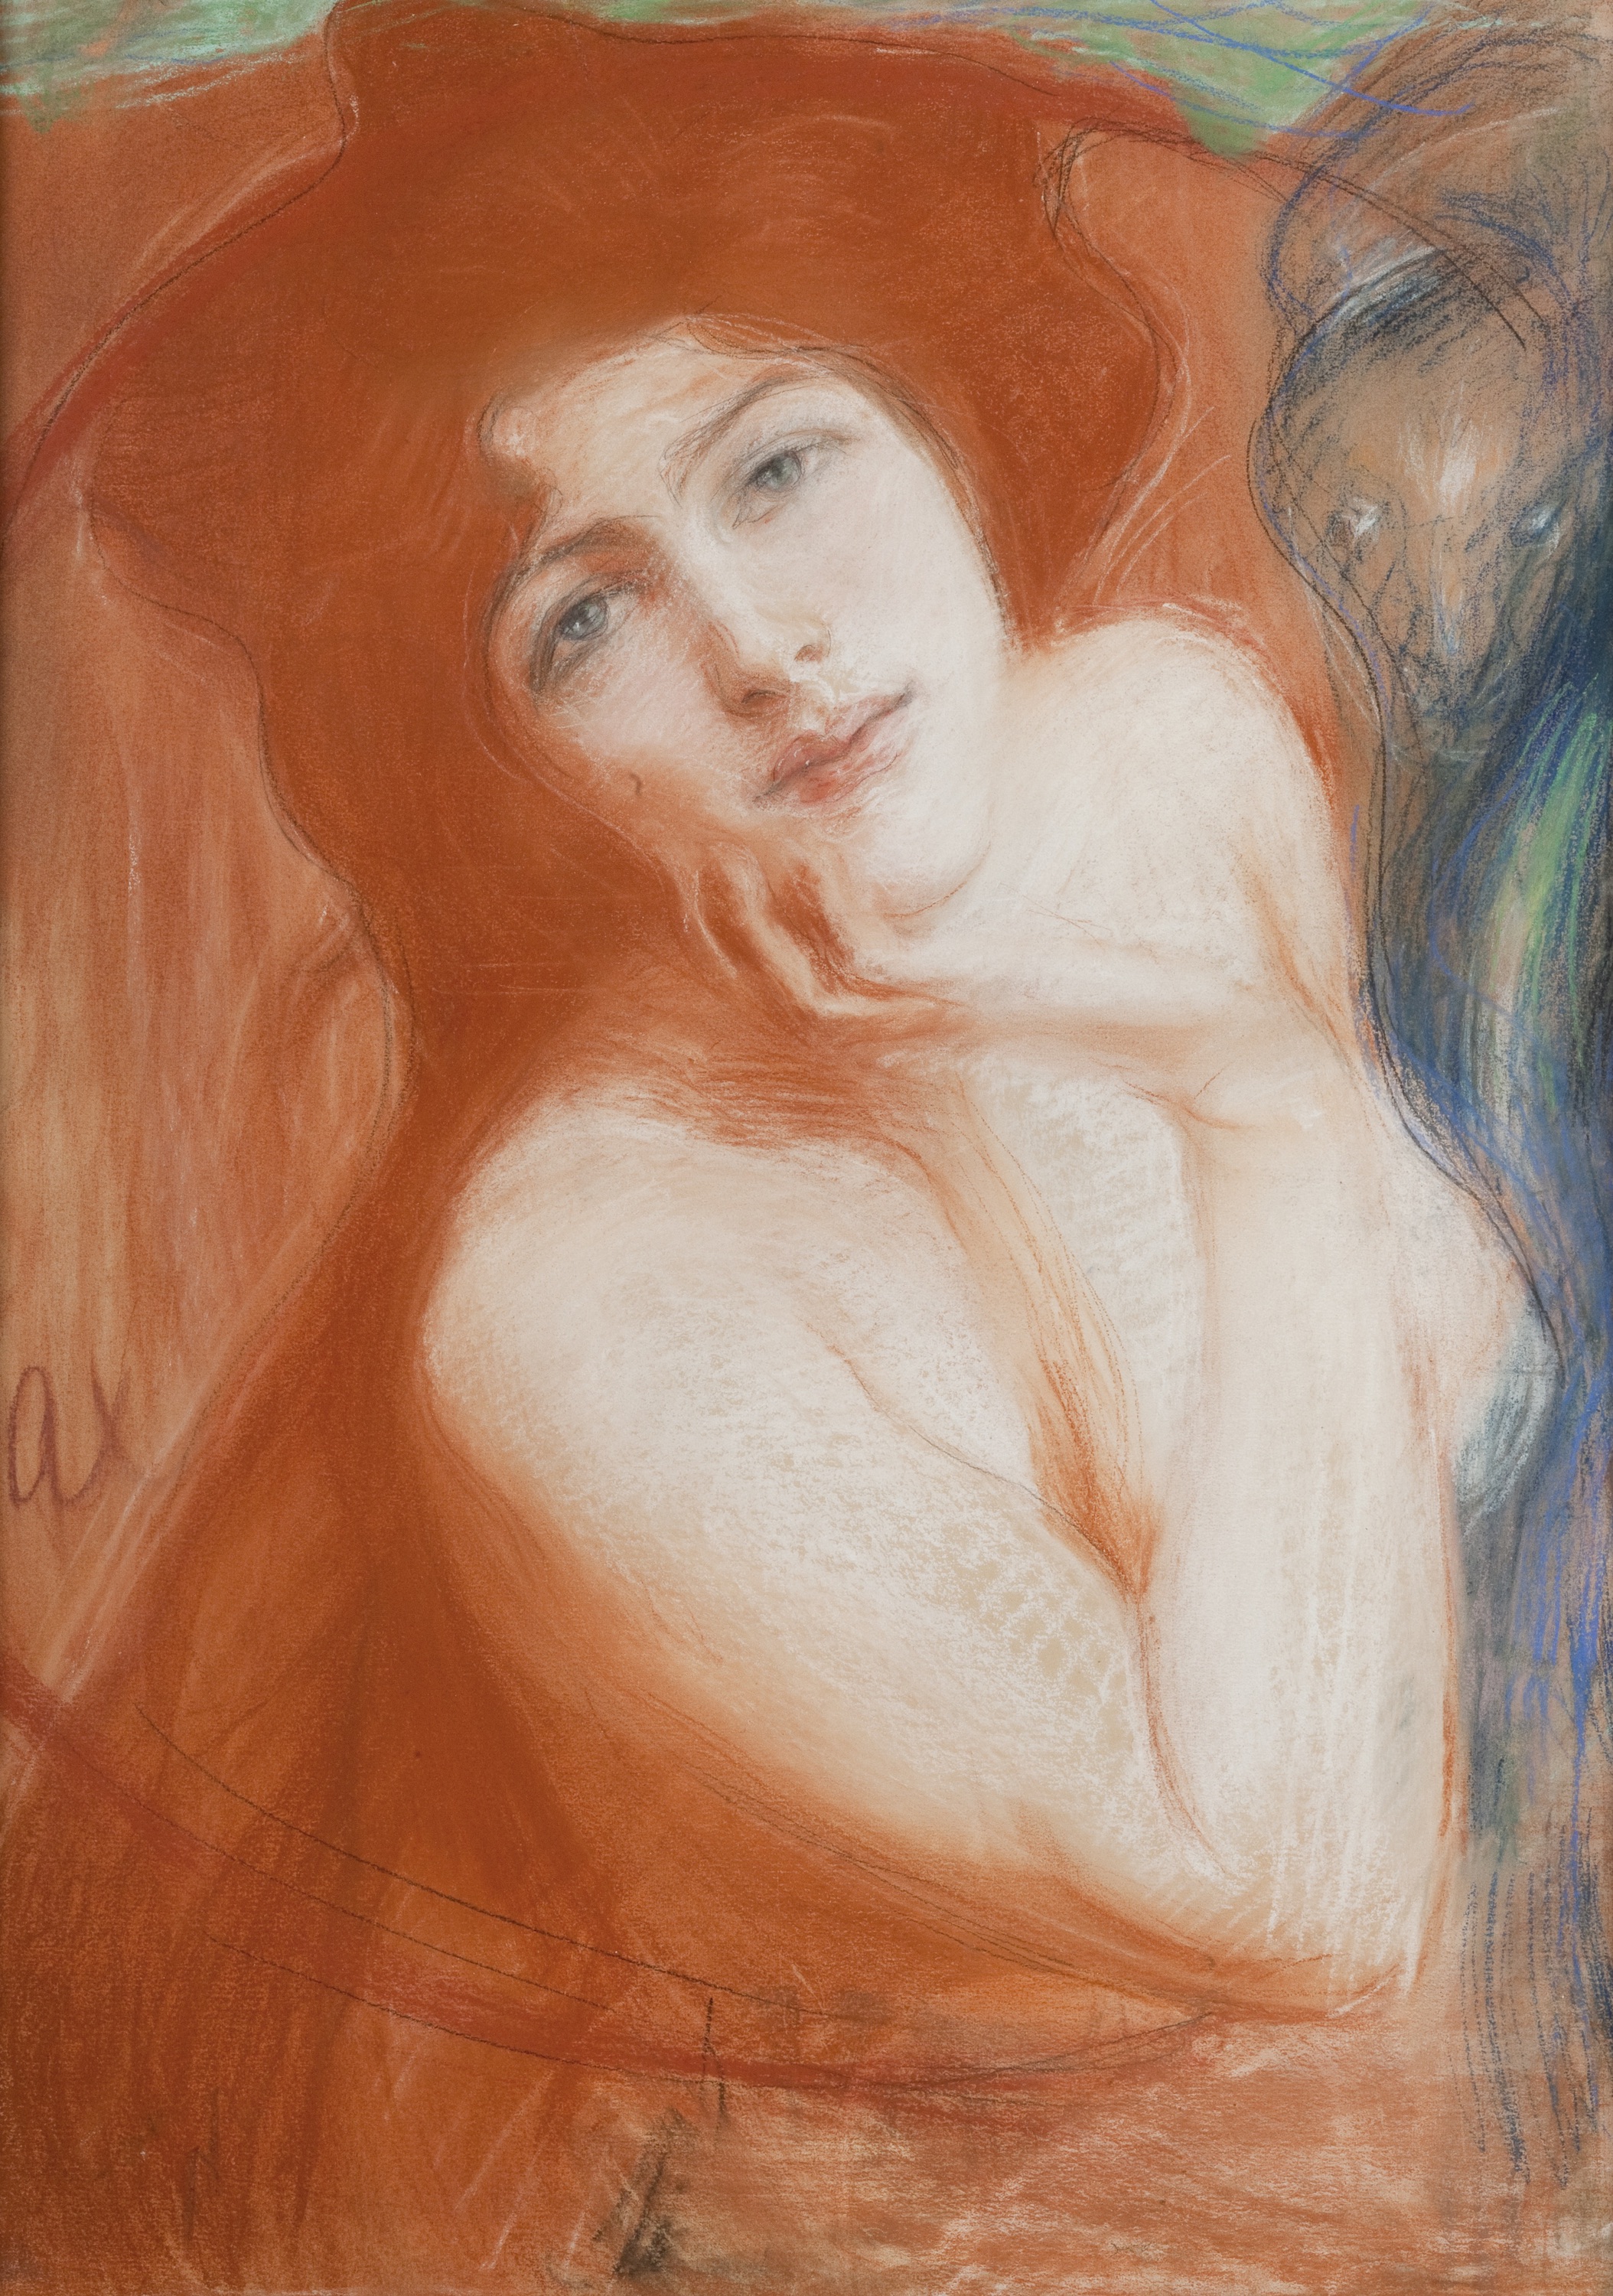 紅髮女子 by Teodor Axentowicz - 1899 